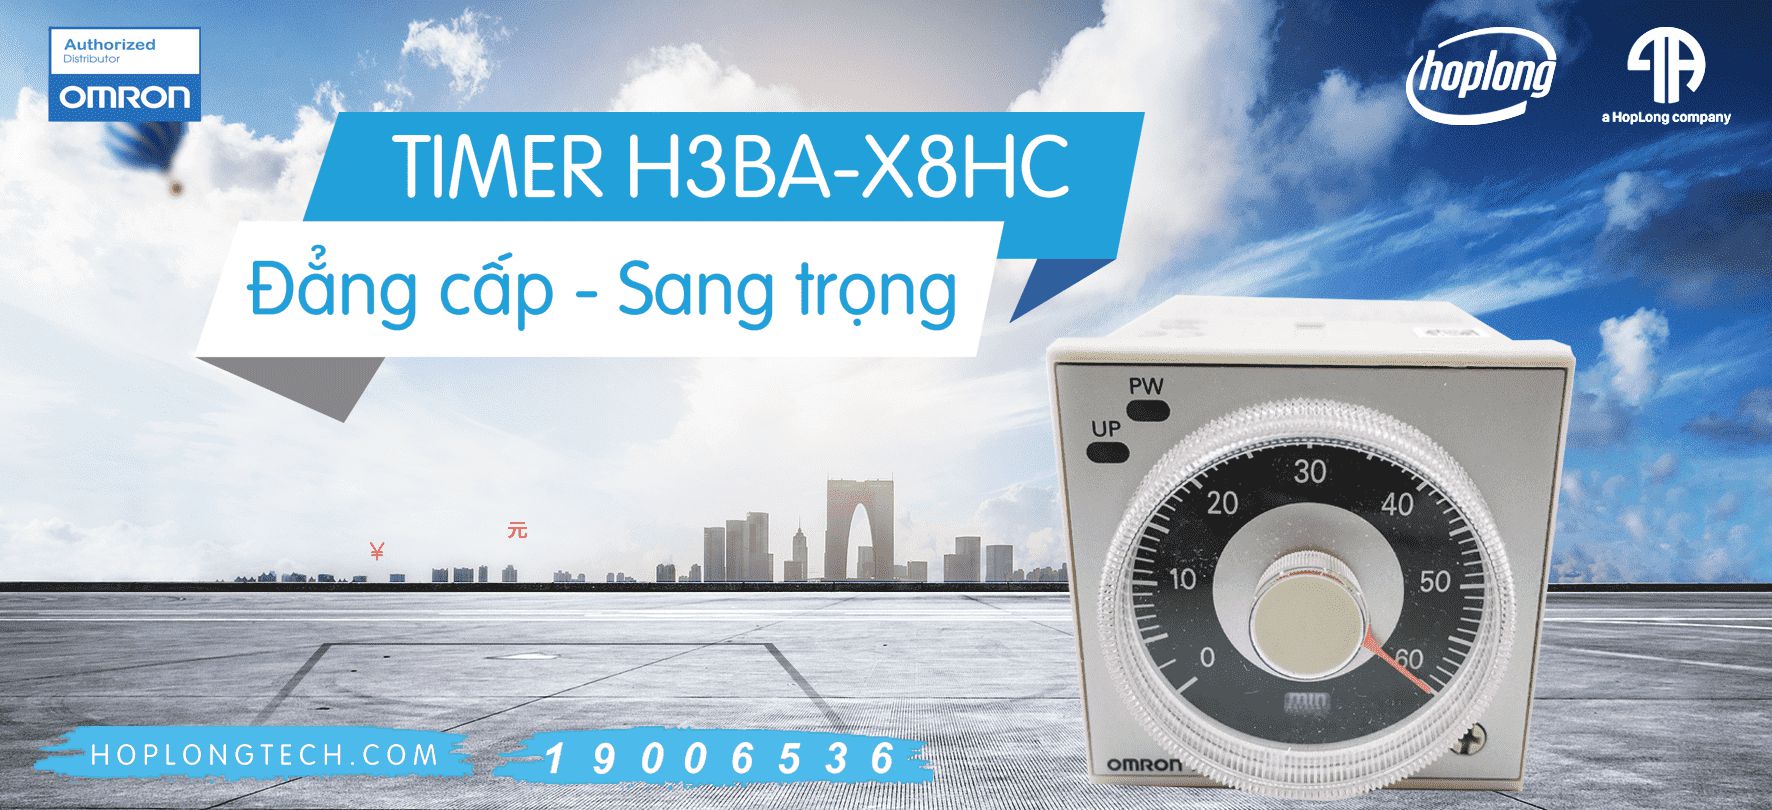 [QC] Phân phối TIMER H3BA-X8HC đang HOT, giá cực tốt